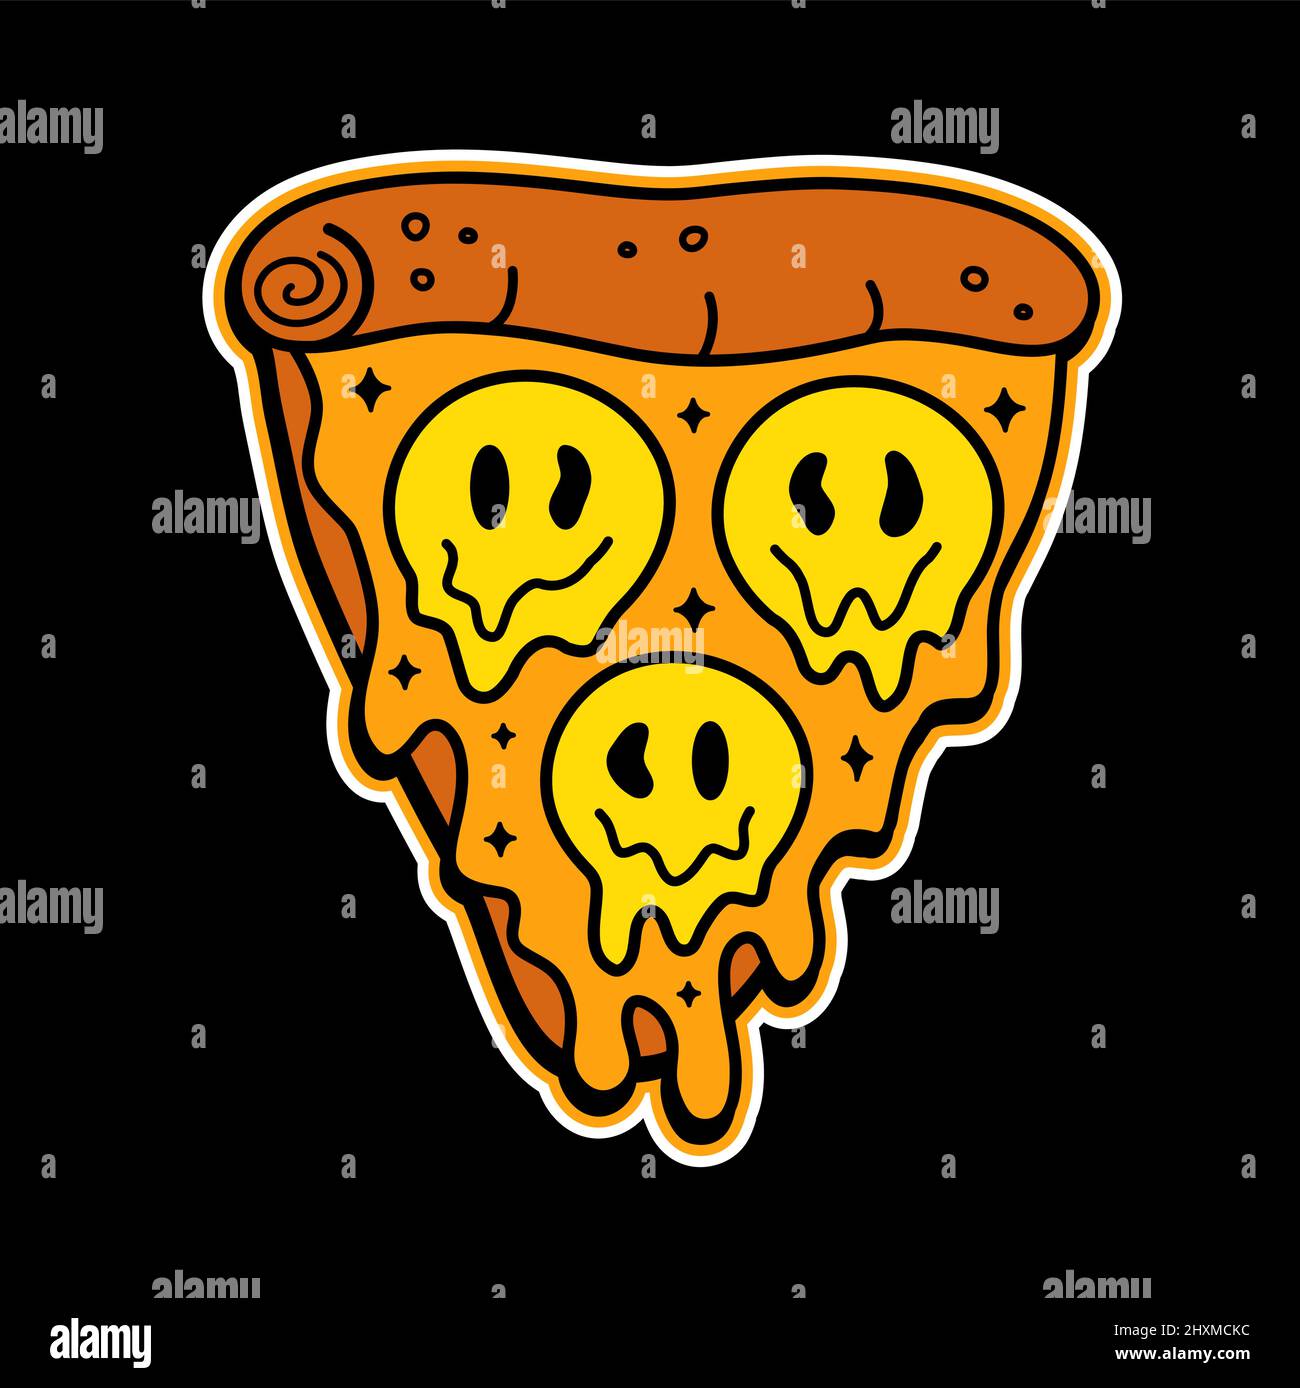 Pizzaschnitt mit T-Shirt-Aufdruck mit „Melt Smile Face“-Motiv. Vektor Doodle Linie Cartoon Charakter Illustration.Pizza, trippy Lächeln Gesicht, Säuredruck auf Poster, T-Shirt, Logo-Konzept Stock Vektor